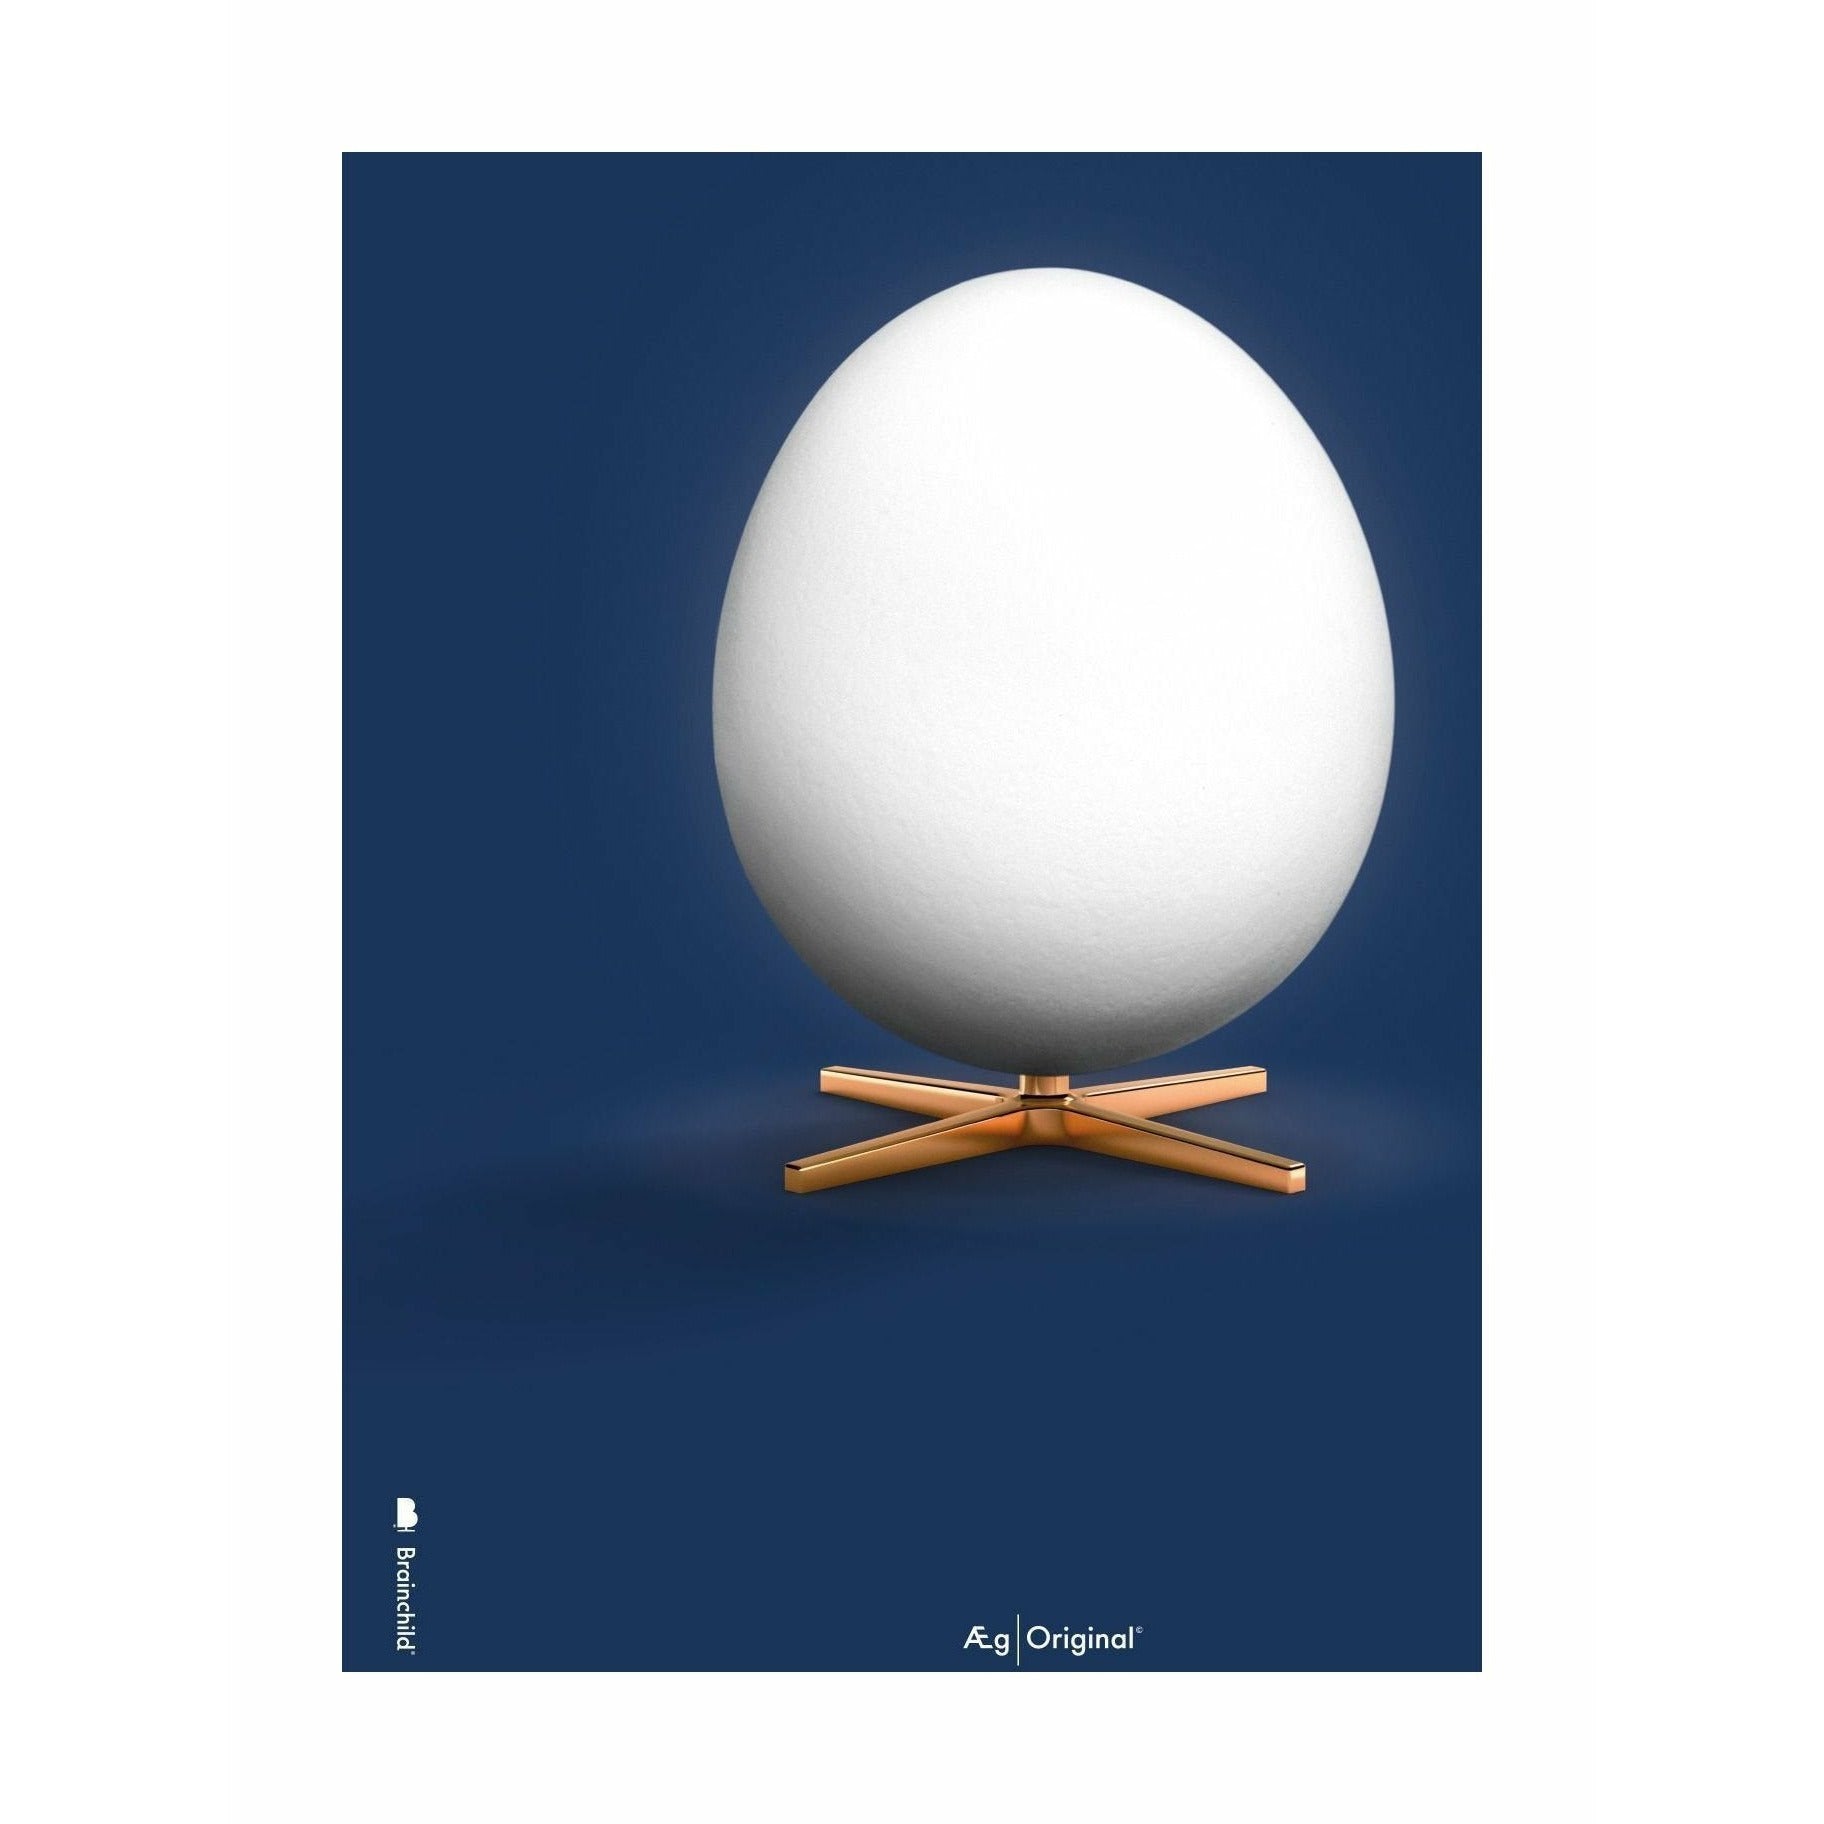 Klasyczny plakat jaja bez ramy 50 x 70 cm, ciemnoniebieskie tło